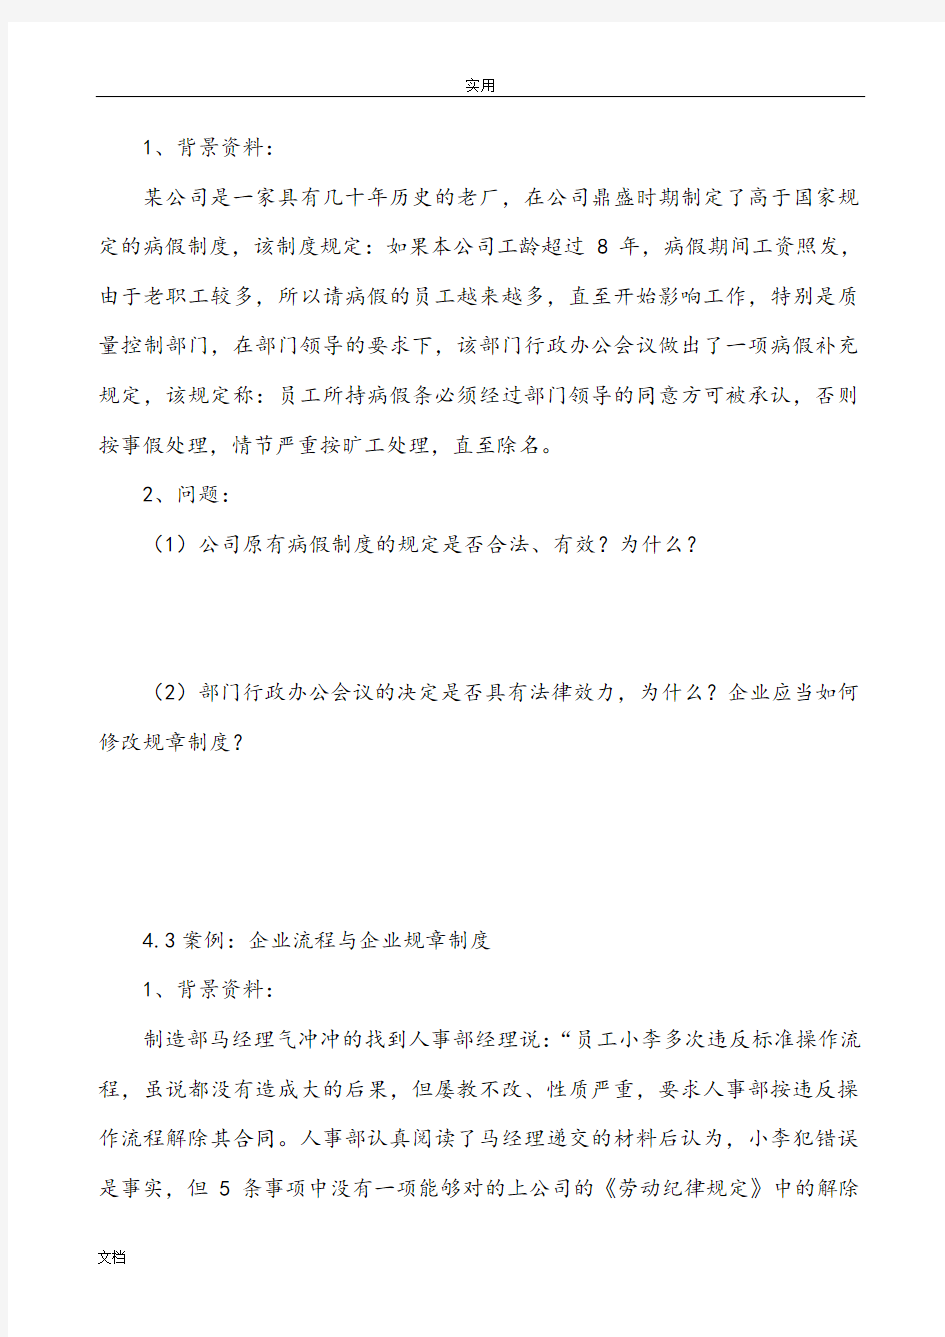 上海劳动关系协调员案例分析报告题D及问题详解